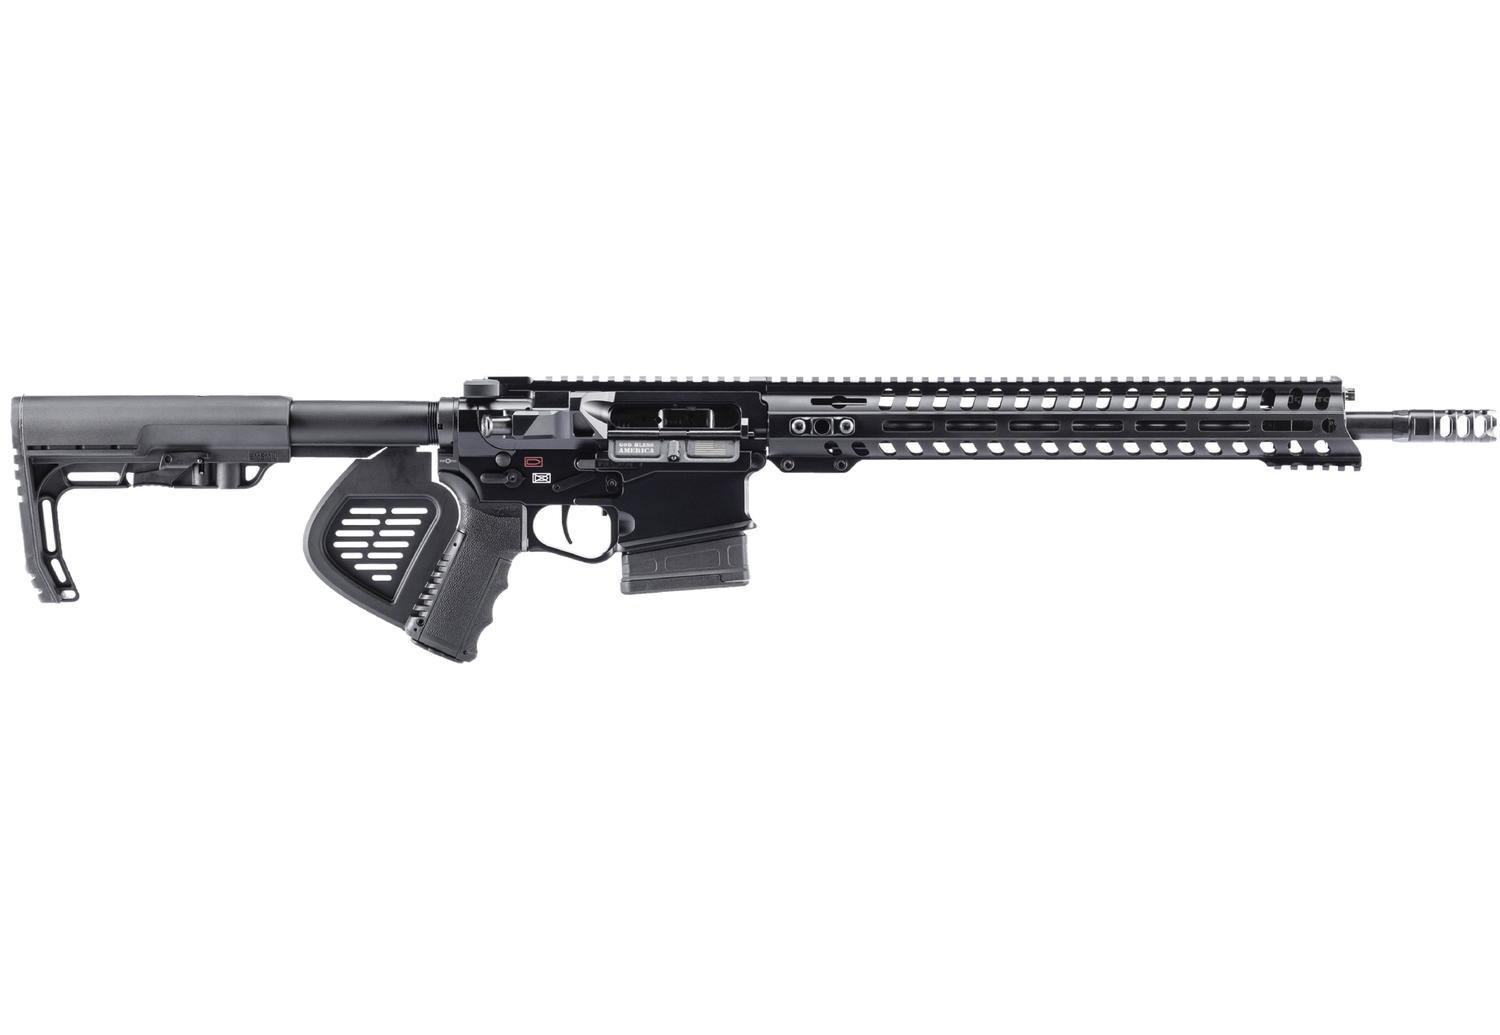  Revolution Di Rifle .308win 16.5in Featureless - Black